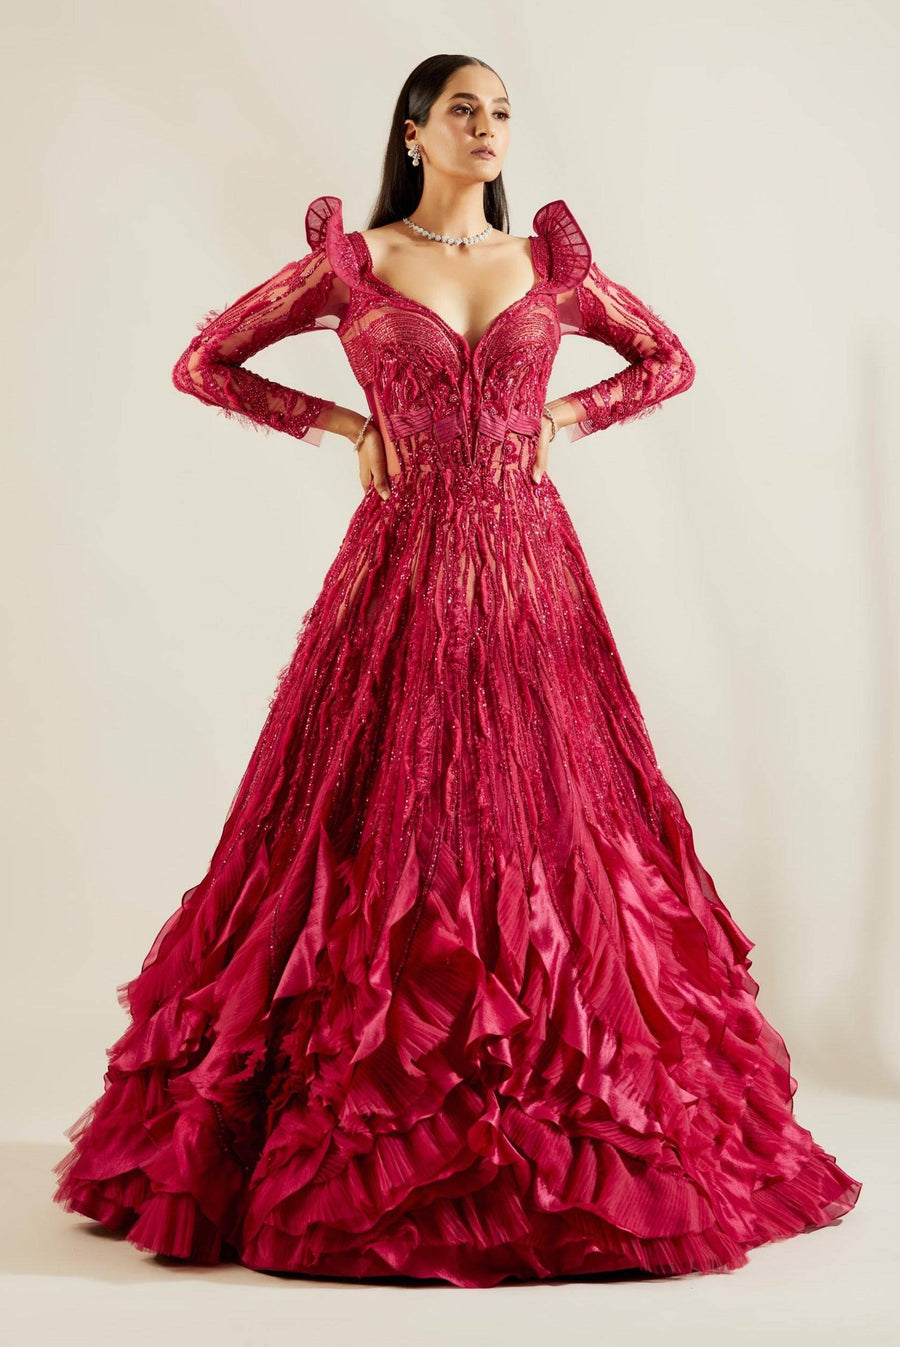 Brill Crimson Gown - WaliaJones